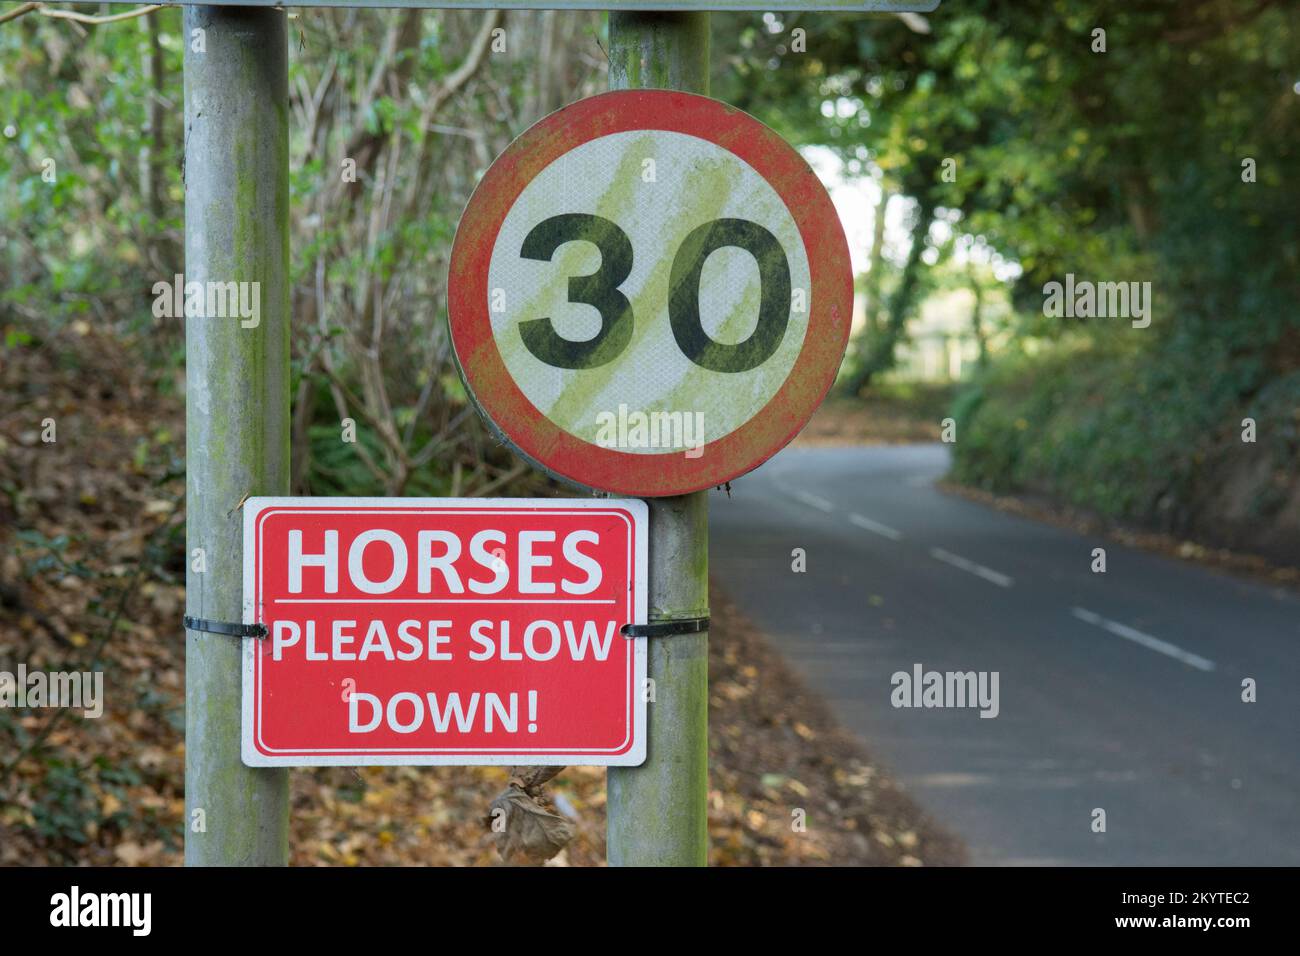 Image amusante de chevaux, veuillez ralentir le panneau de signalisation routière et le panneau de limite de vitesse de 30 mph sur une voie étroite Banque D'Images